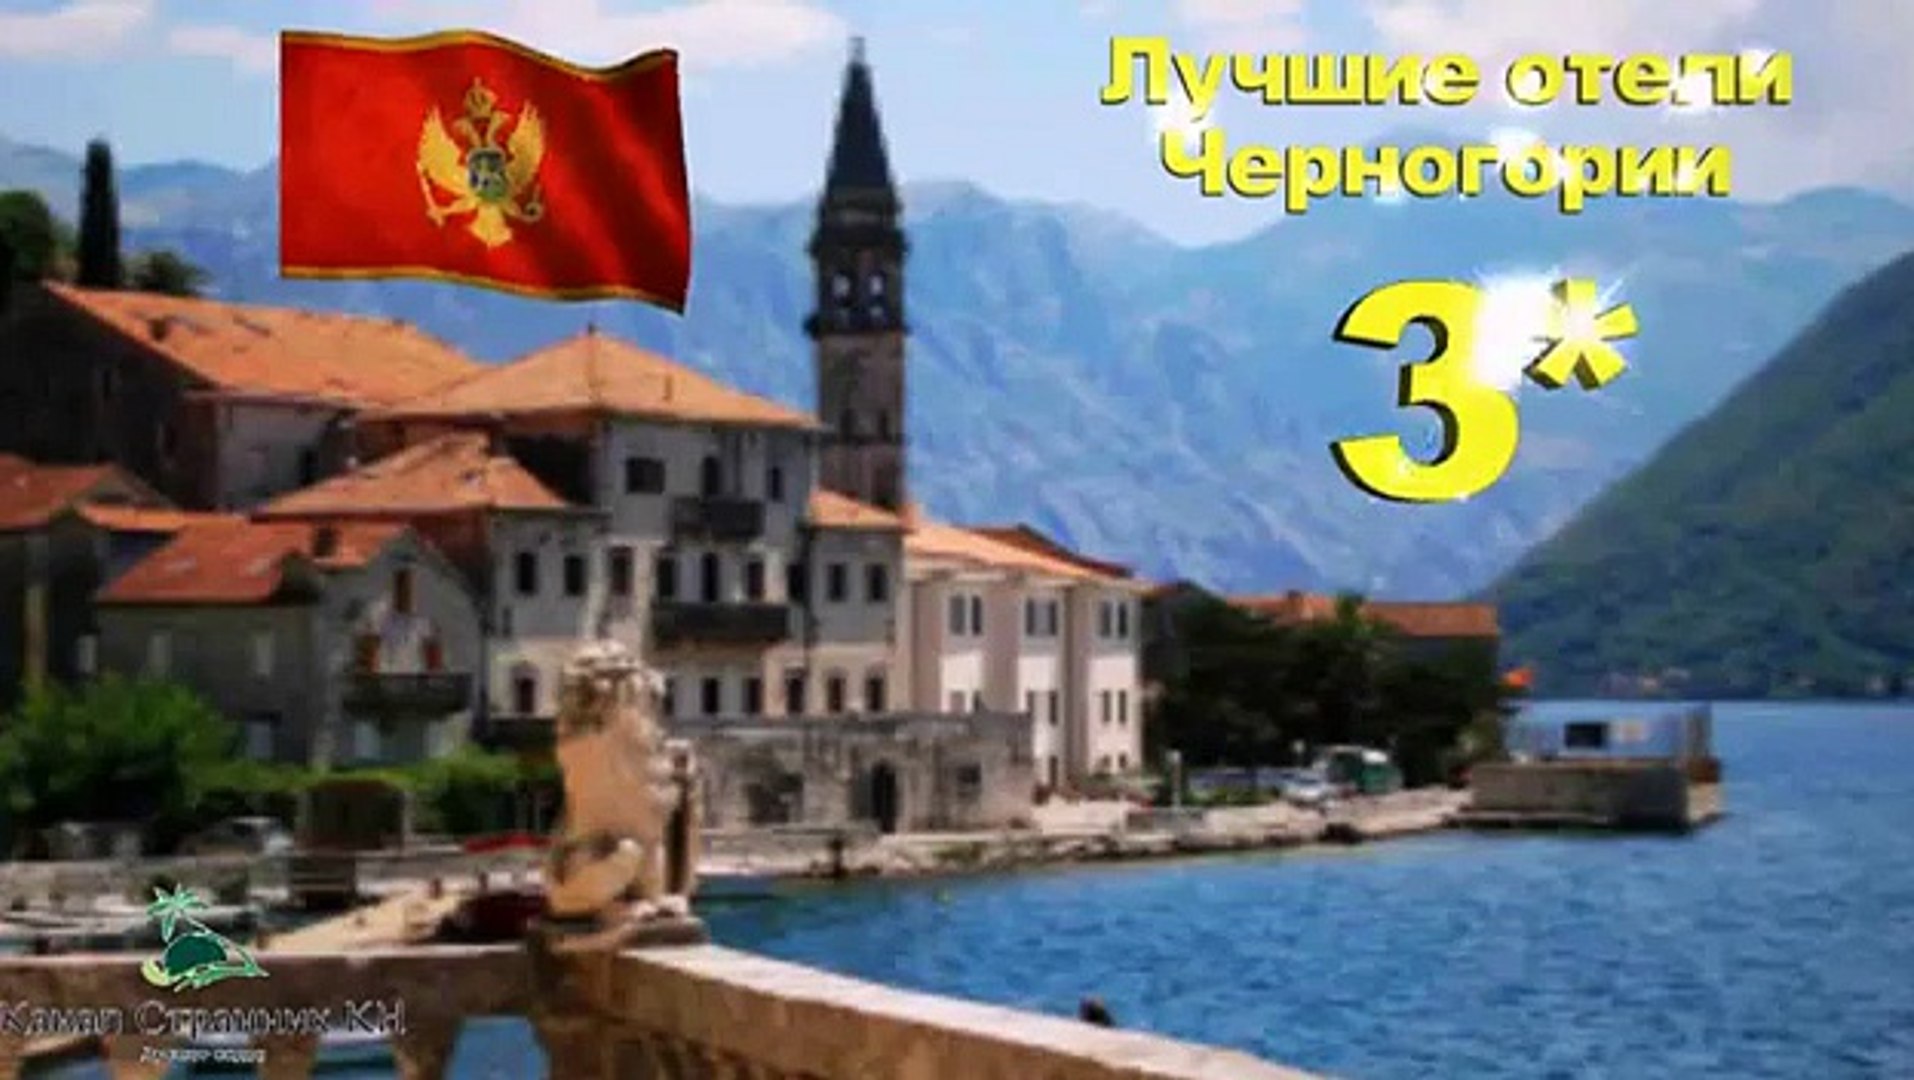 Черногория: Лучшие отели Черногории: 3 звезды